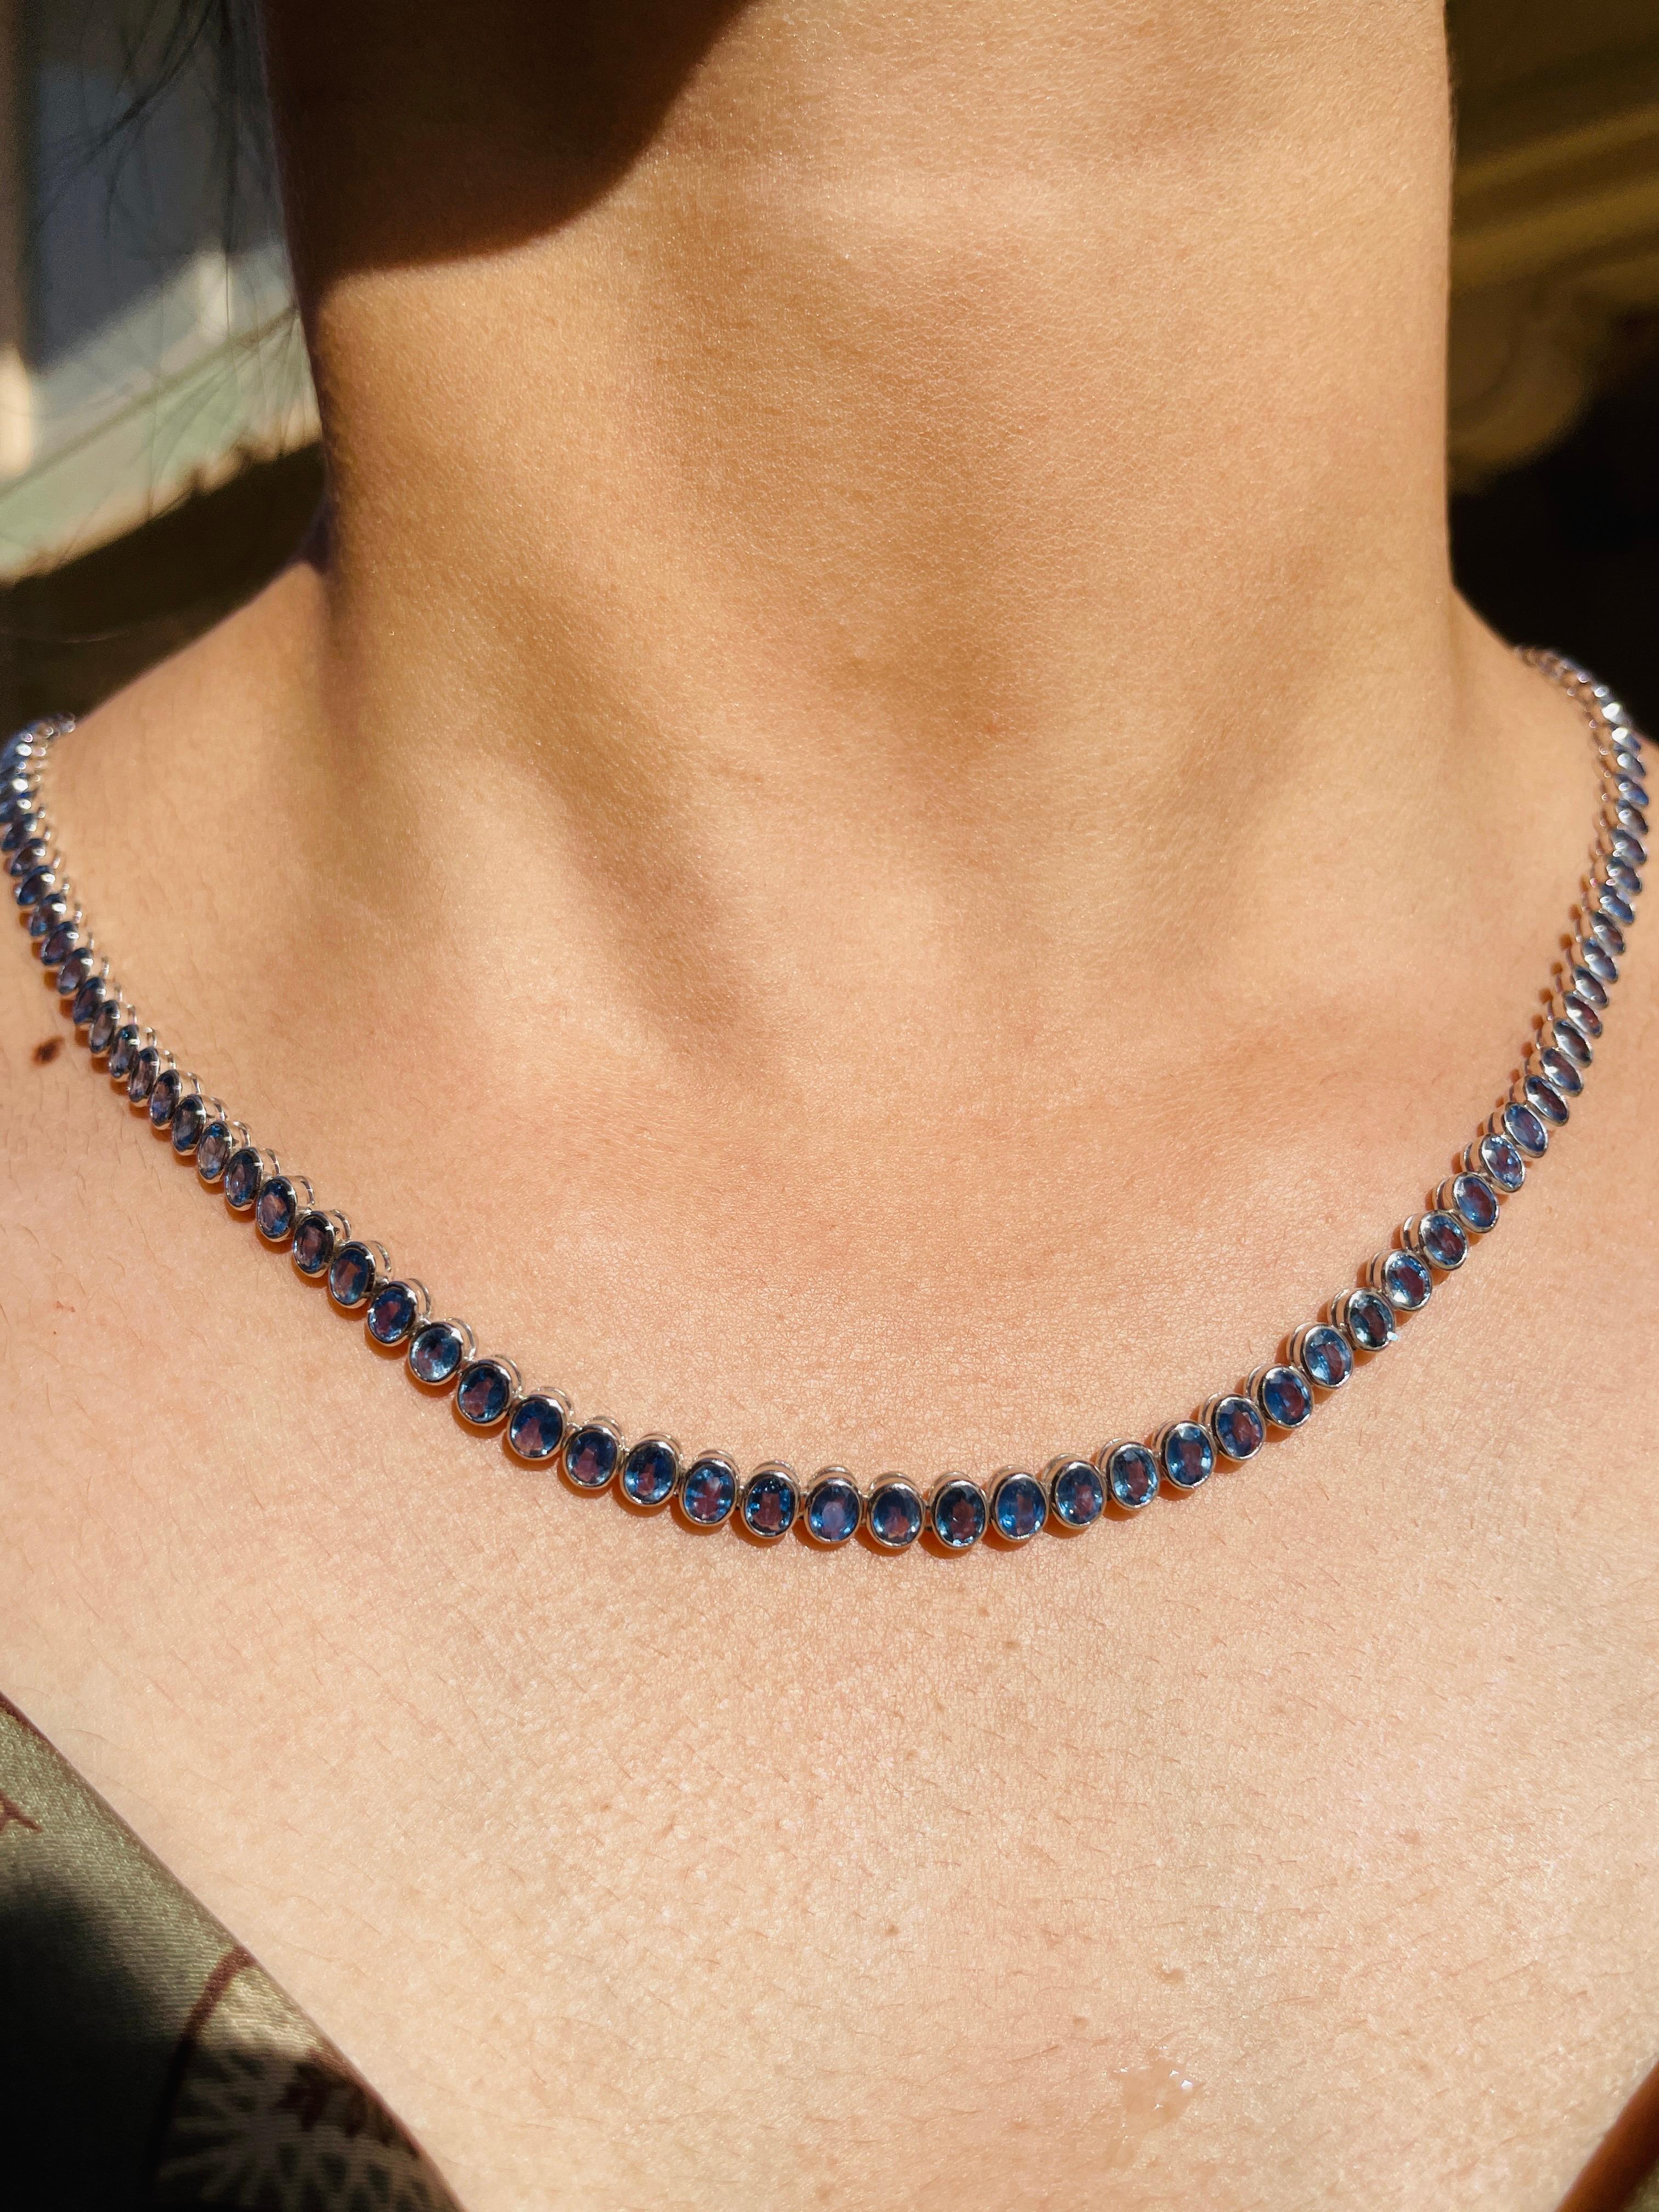 Blaue Saphir-Halskette aus 18 Karat Gold, besetzt mit Saphiren im Ovalschliff.
Ergänzen Sie Ihren Look mit dieser eleganten blauen Saphir-Perlenkette. Dieses atemberaubende Schmuckstück wertet einen Freizeitlook oder ein elegantes Outfit sofort auf.